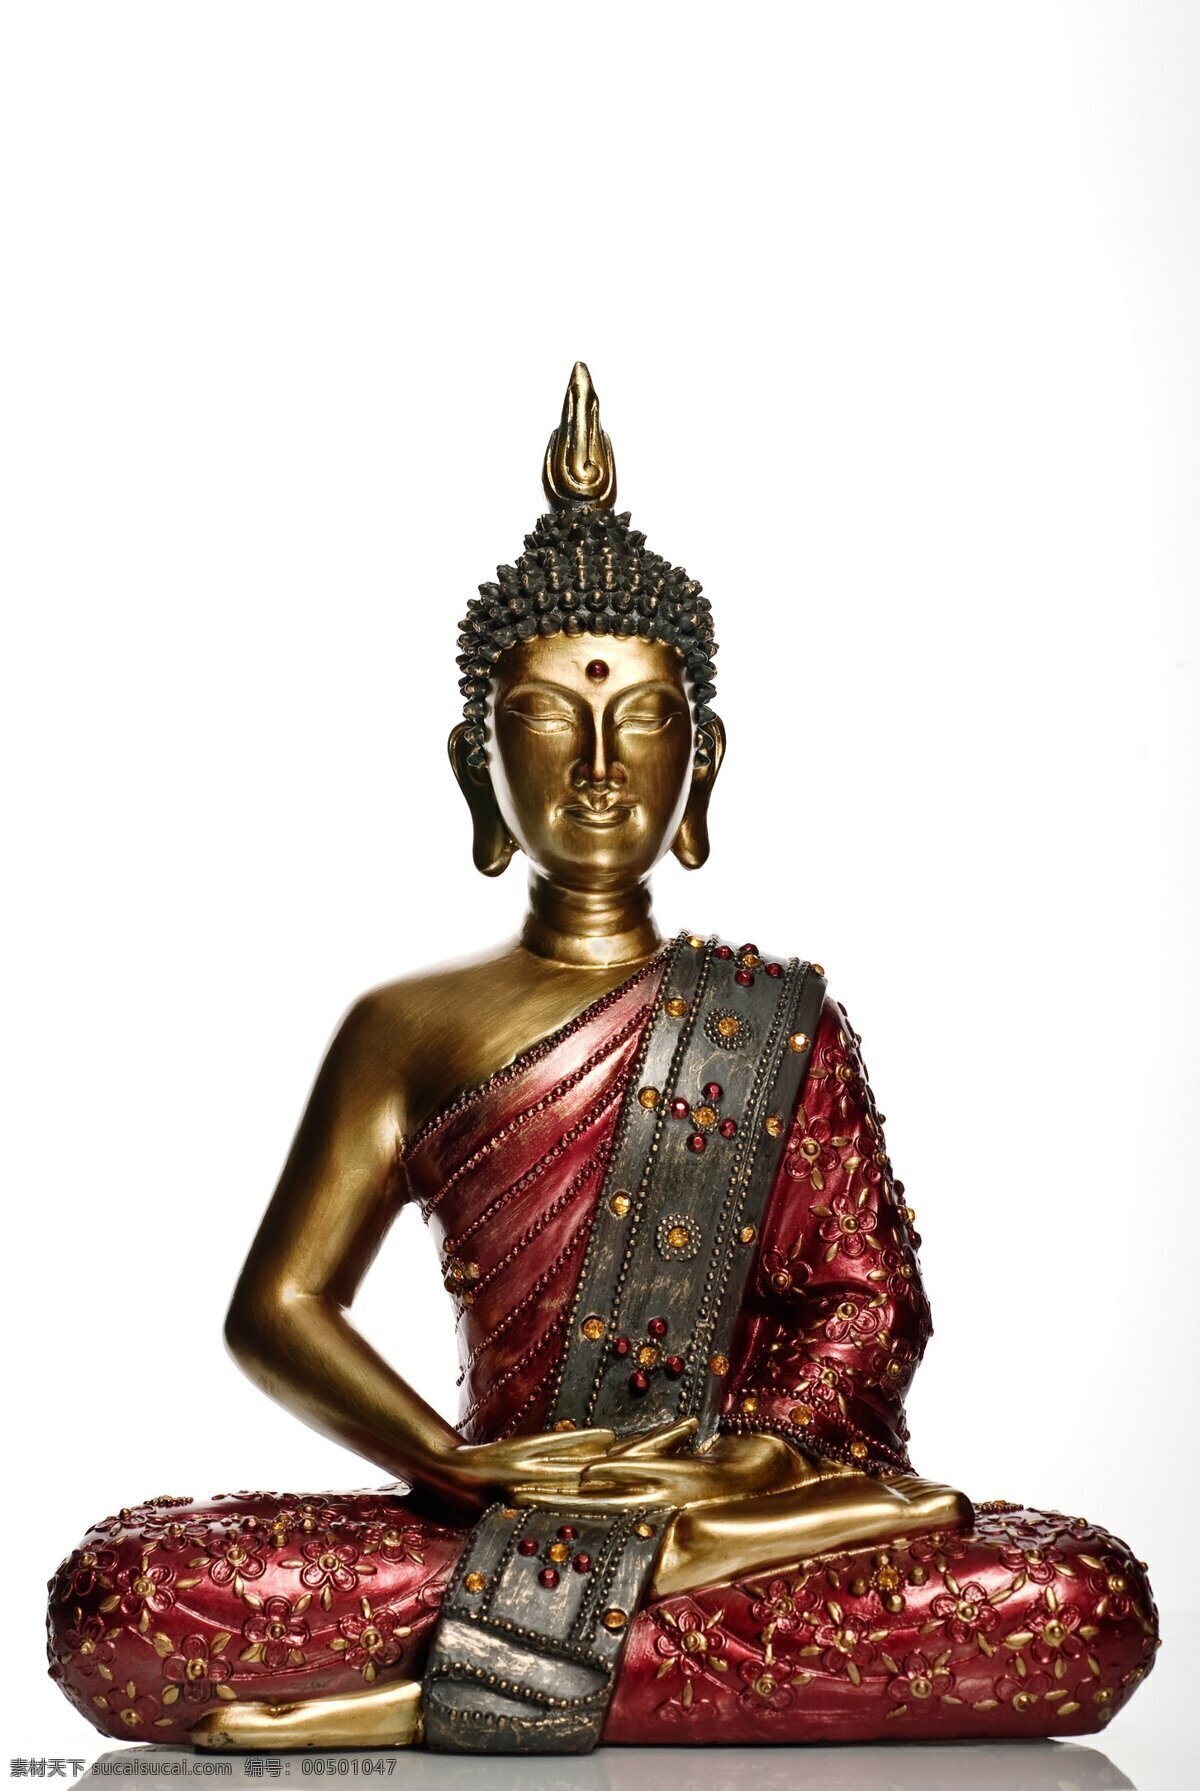 泰国 佛像 佛 佛教 铜器 铜艺 宗教 铜雕 器物 佛教用品 文化艺术